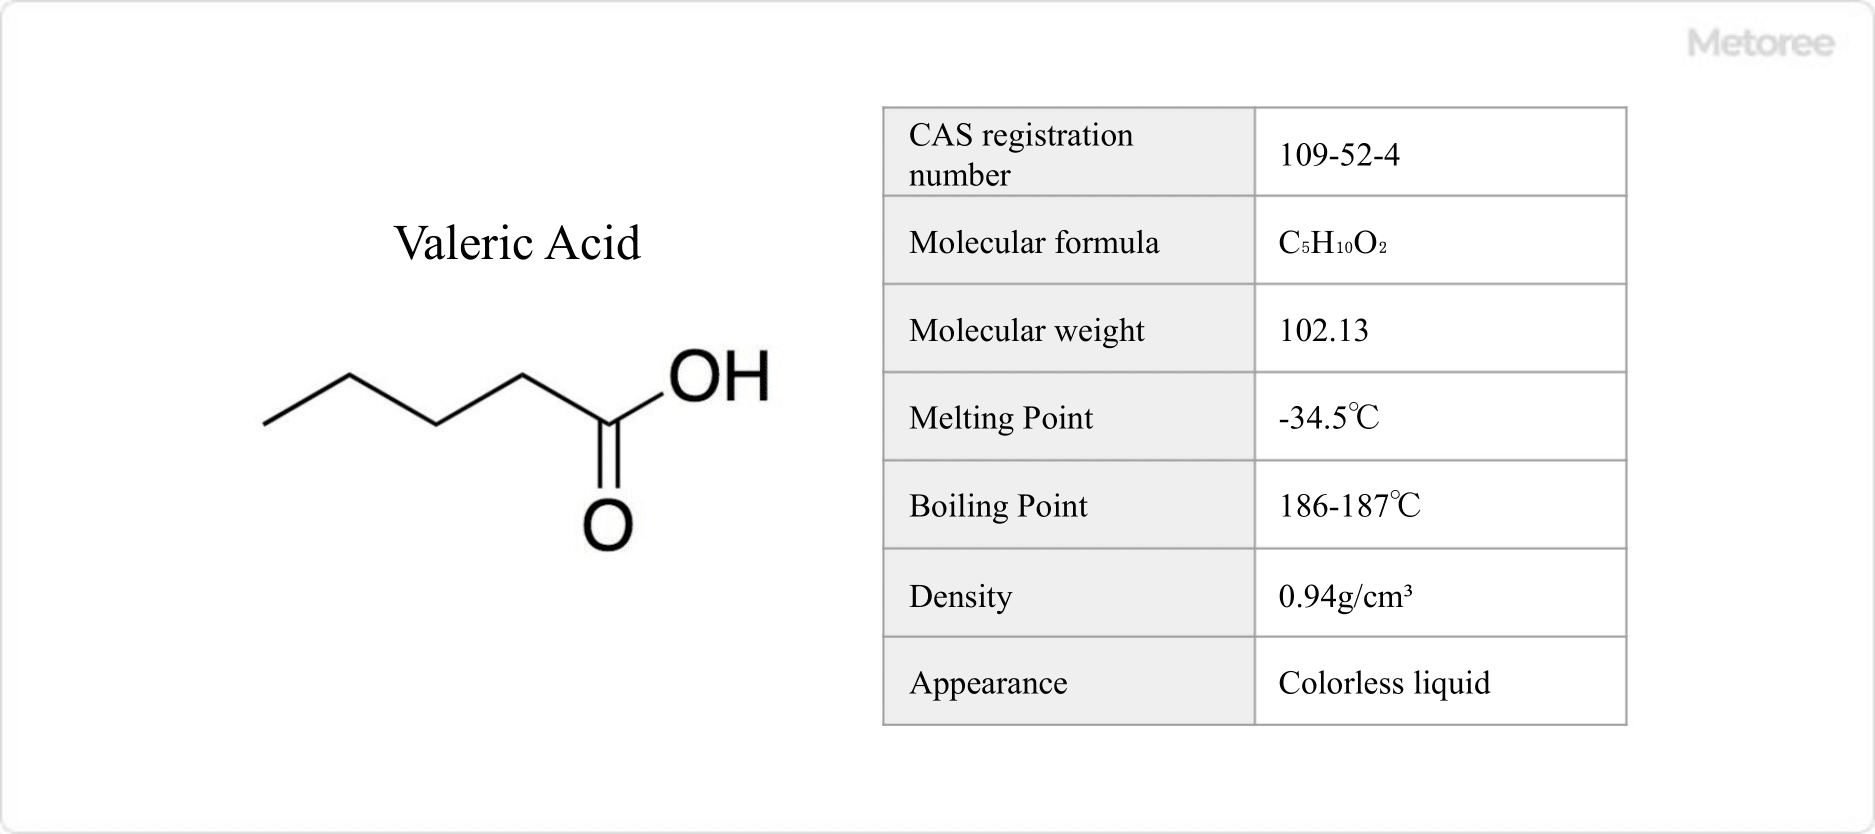 Figure 1. Basic information on valeric acid